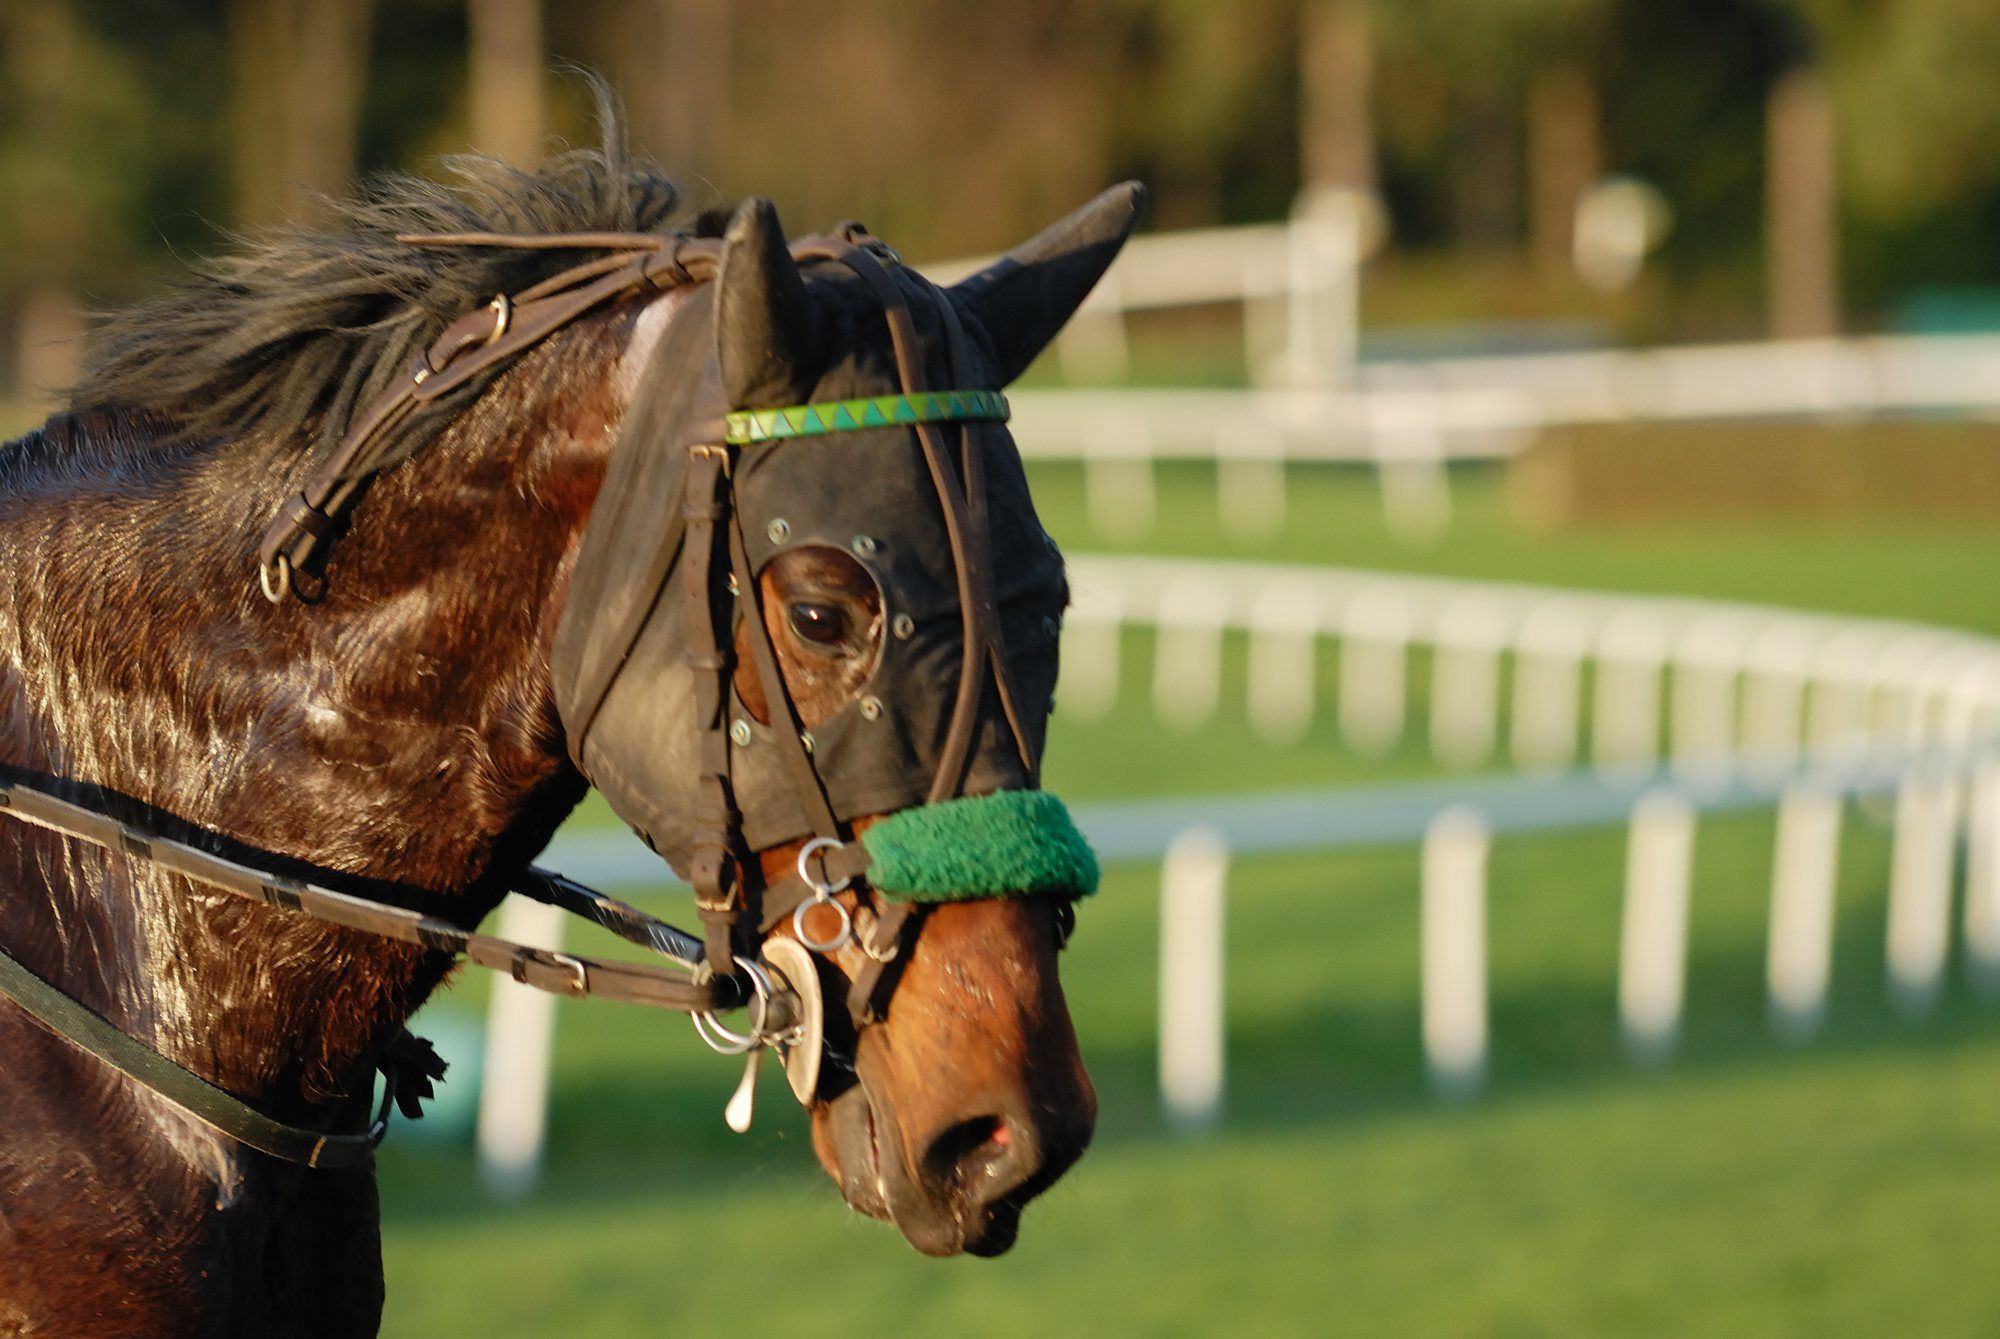 Horse at racetrakc regarding the standardbre breeders class action lawsuit win